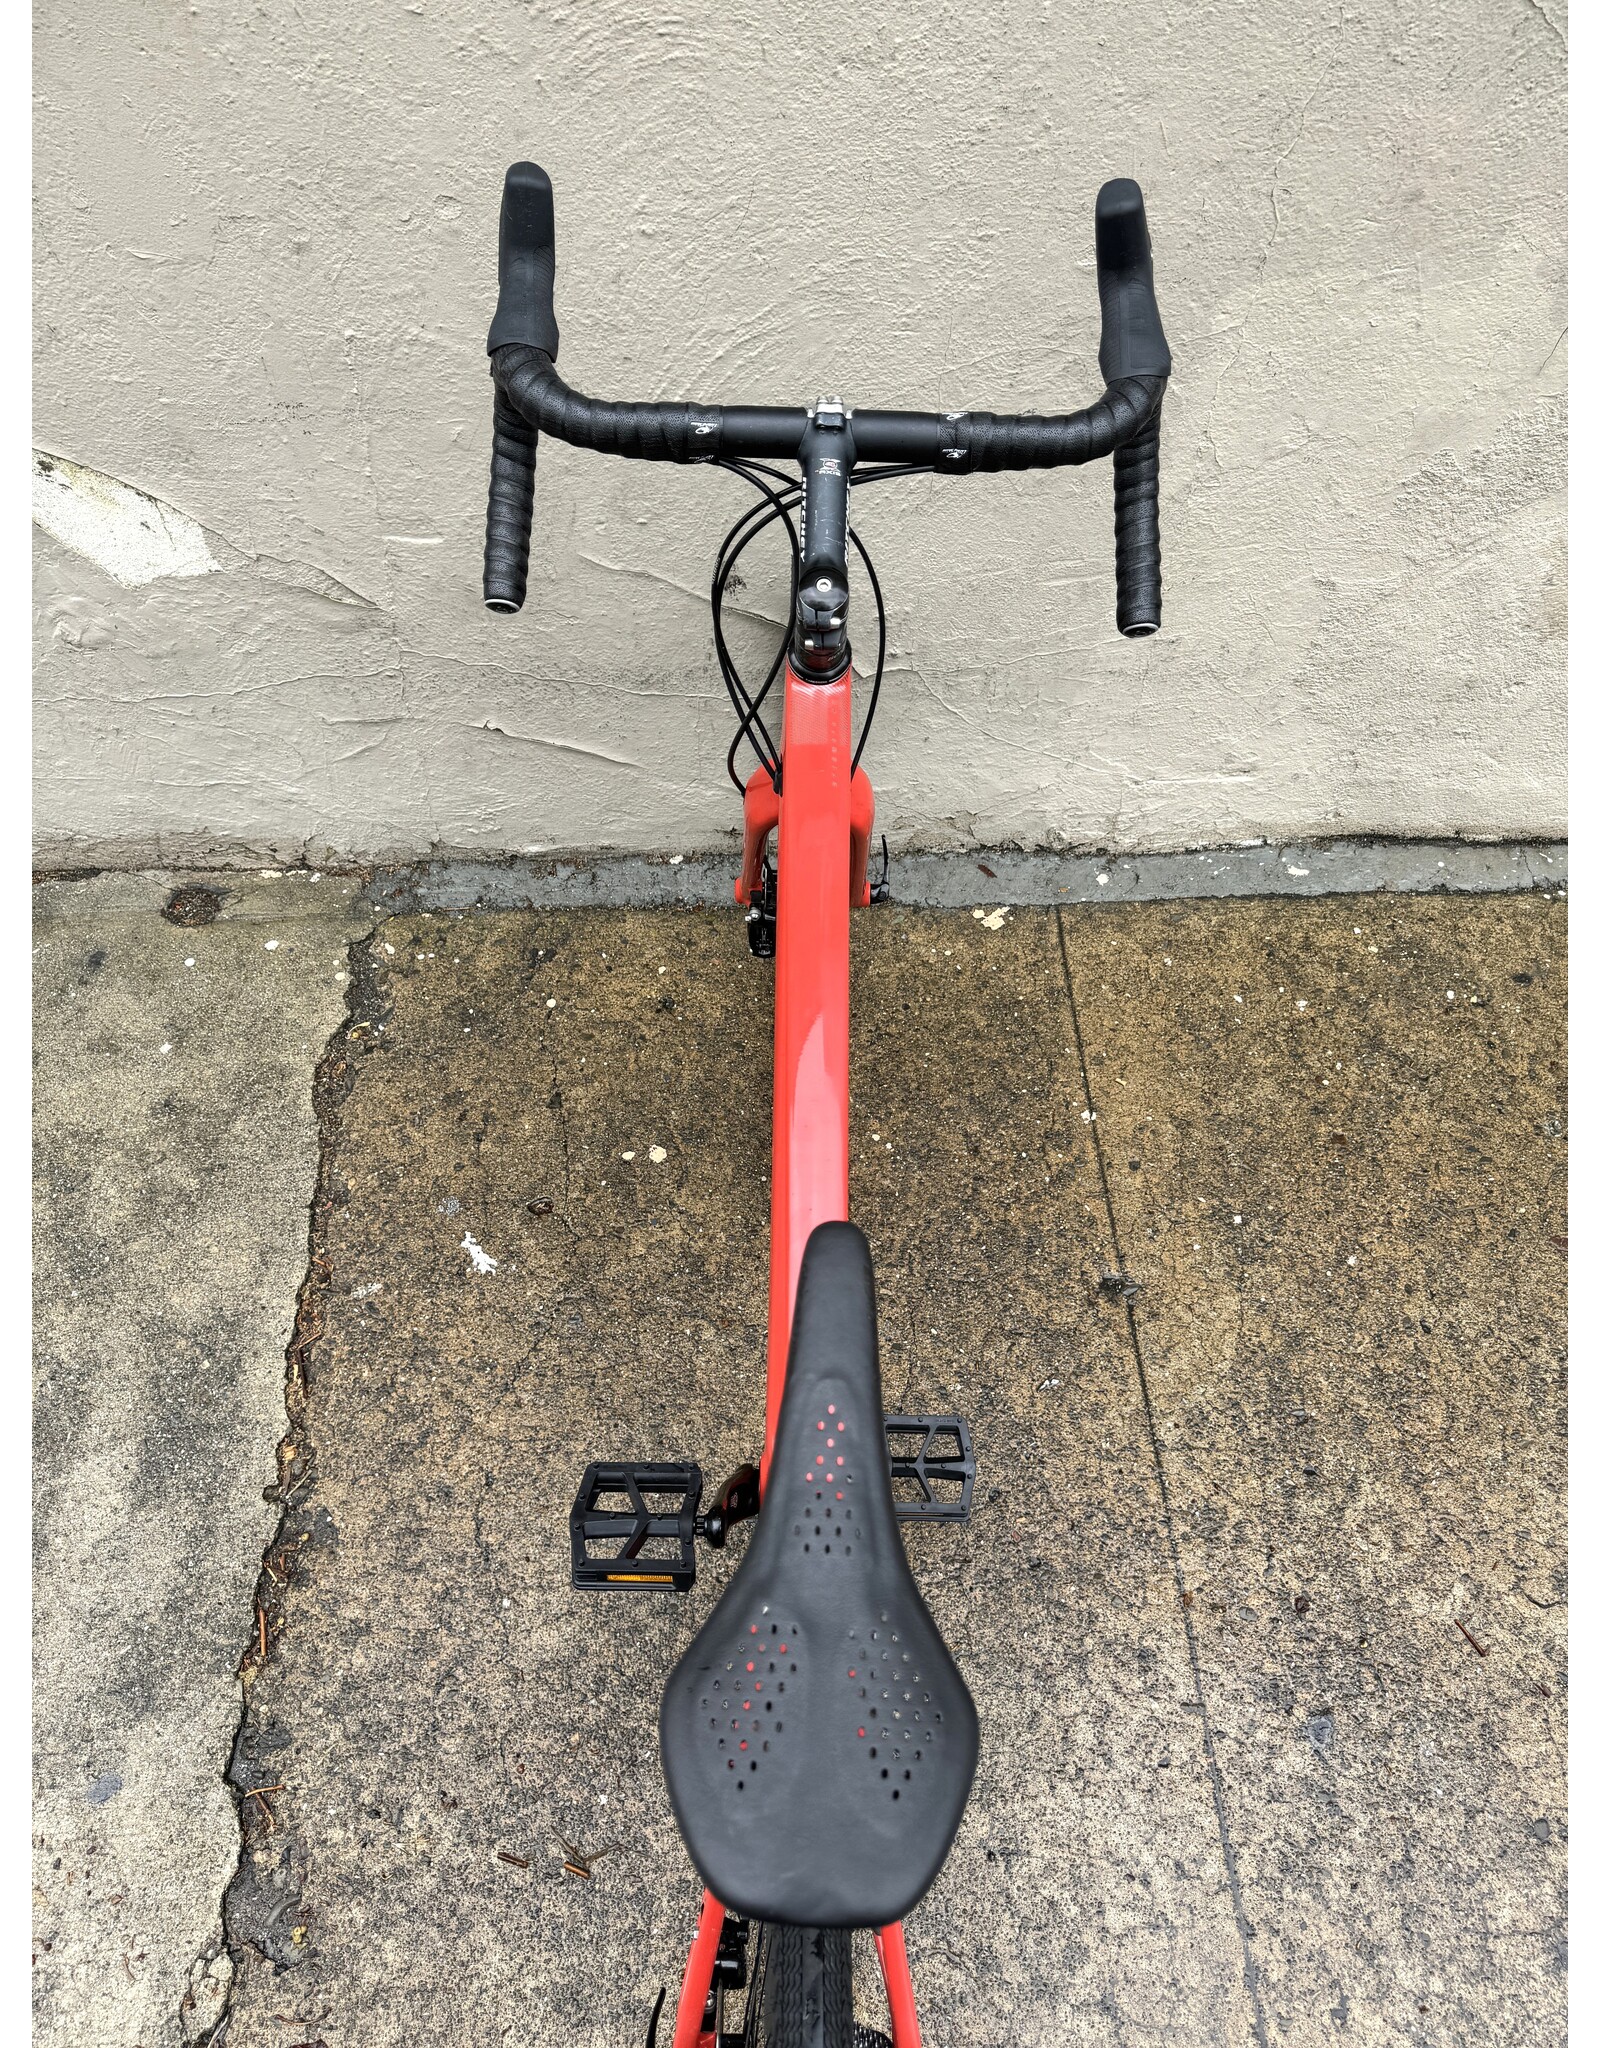 Santa Cruz Santa Cruz Stigmata CC Gravel Bike, 2019, 60cm, Orange